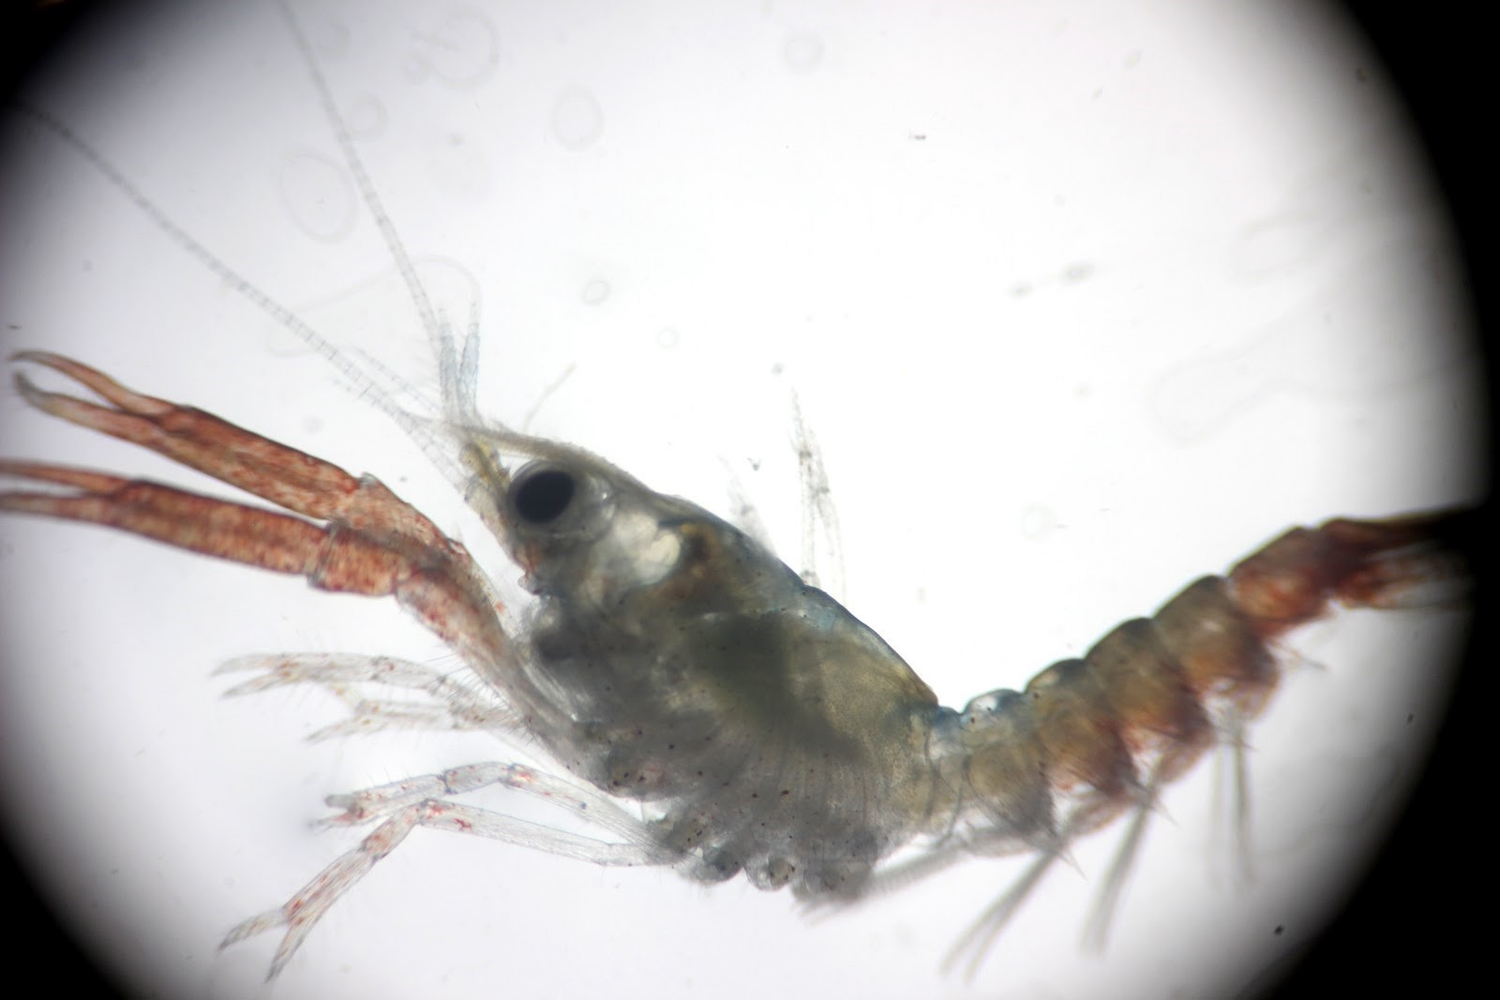 Postlarval lobster under microscope